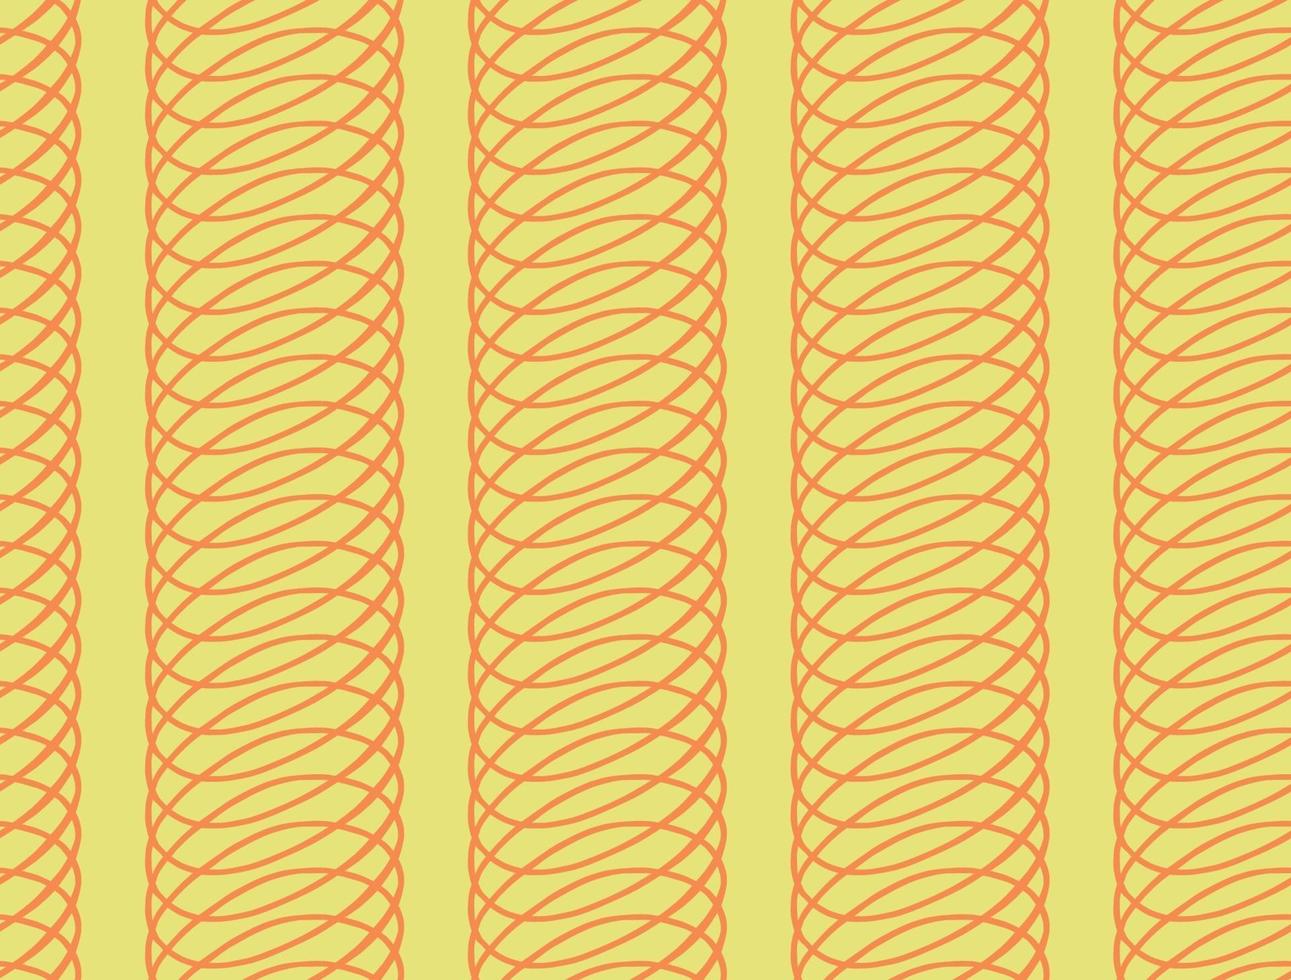 Vector texture di sfondo, seamless pattern. colori disegnati a mano, gialli, arancioni.